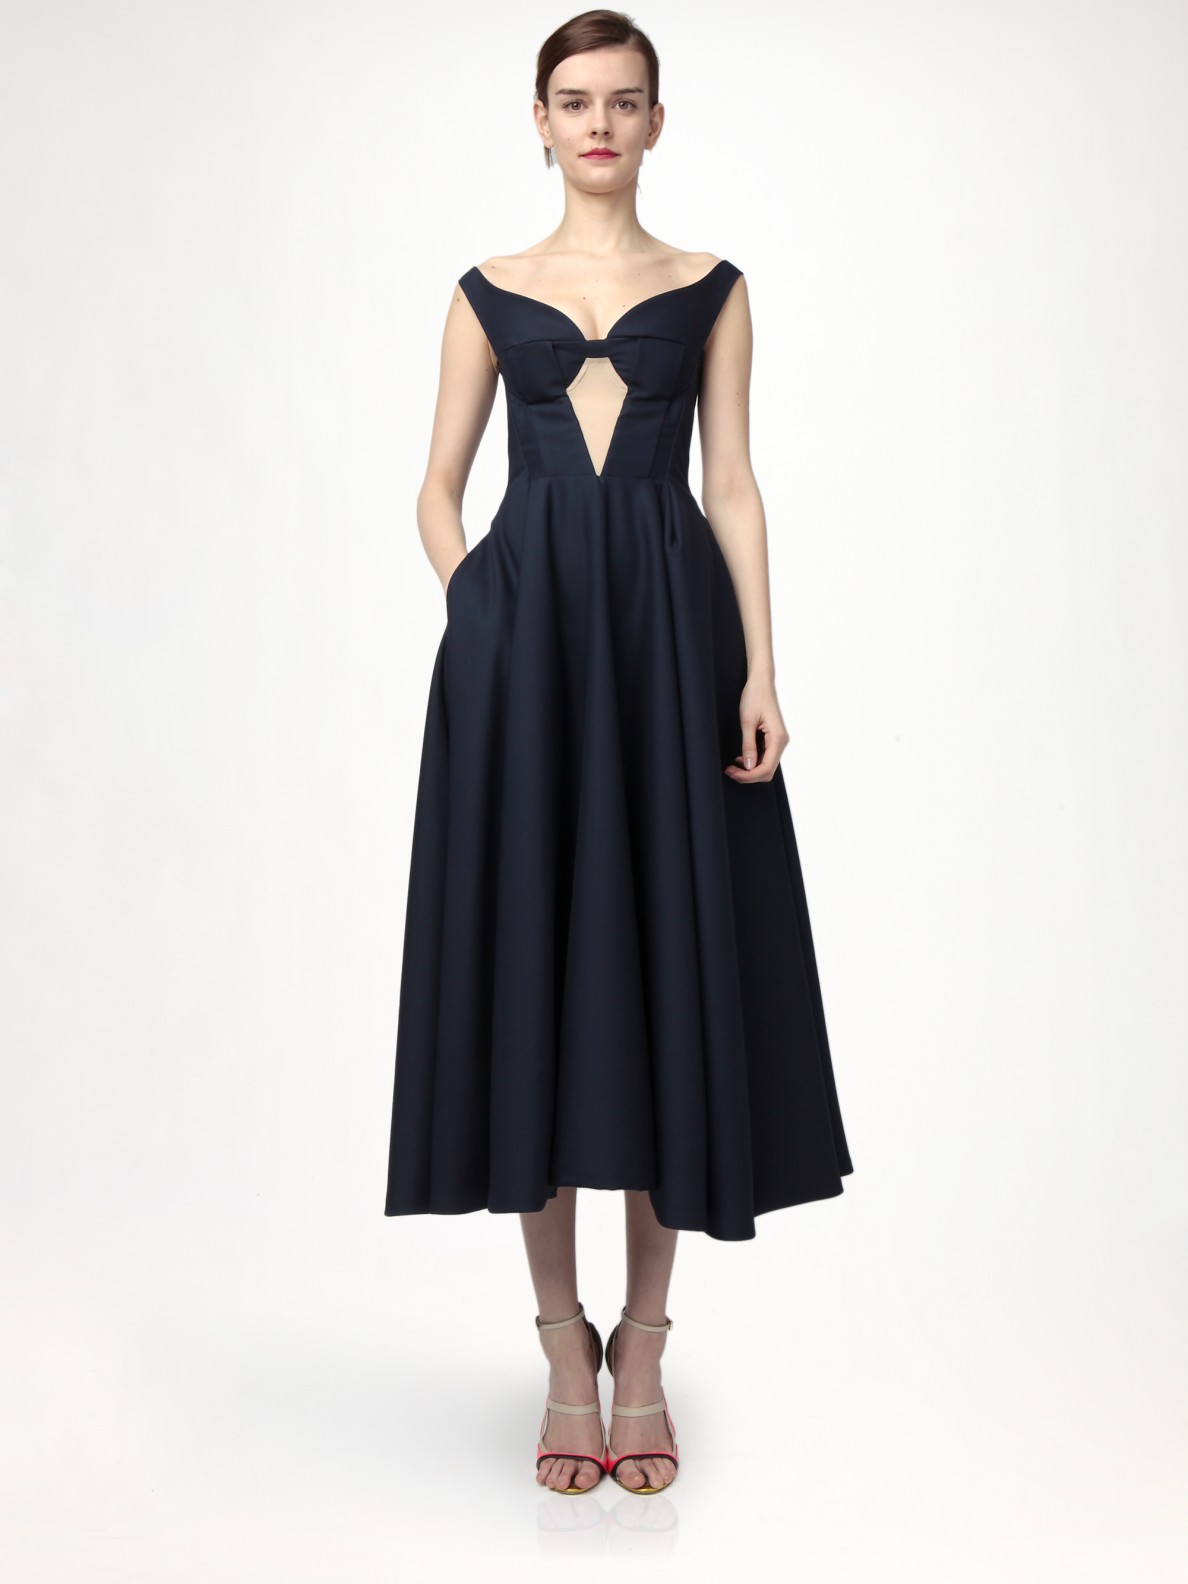 Lyst - Jil Sander Wool Dress in Black